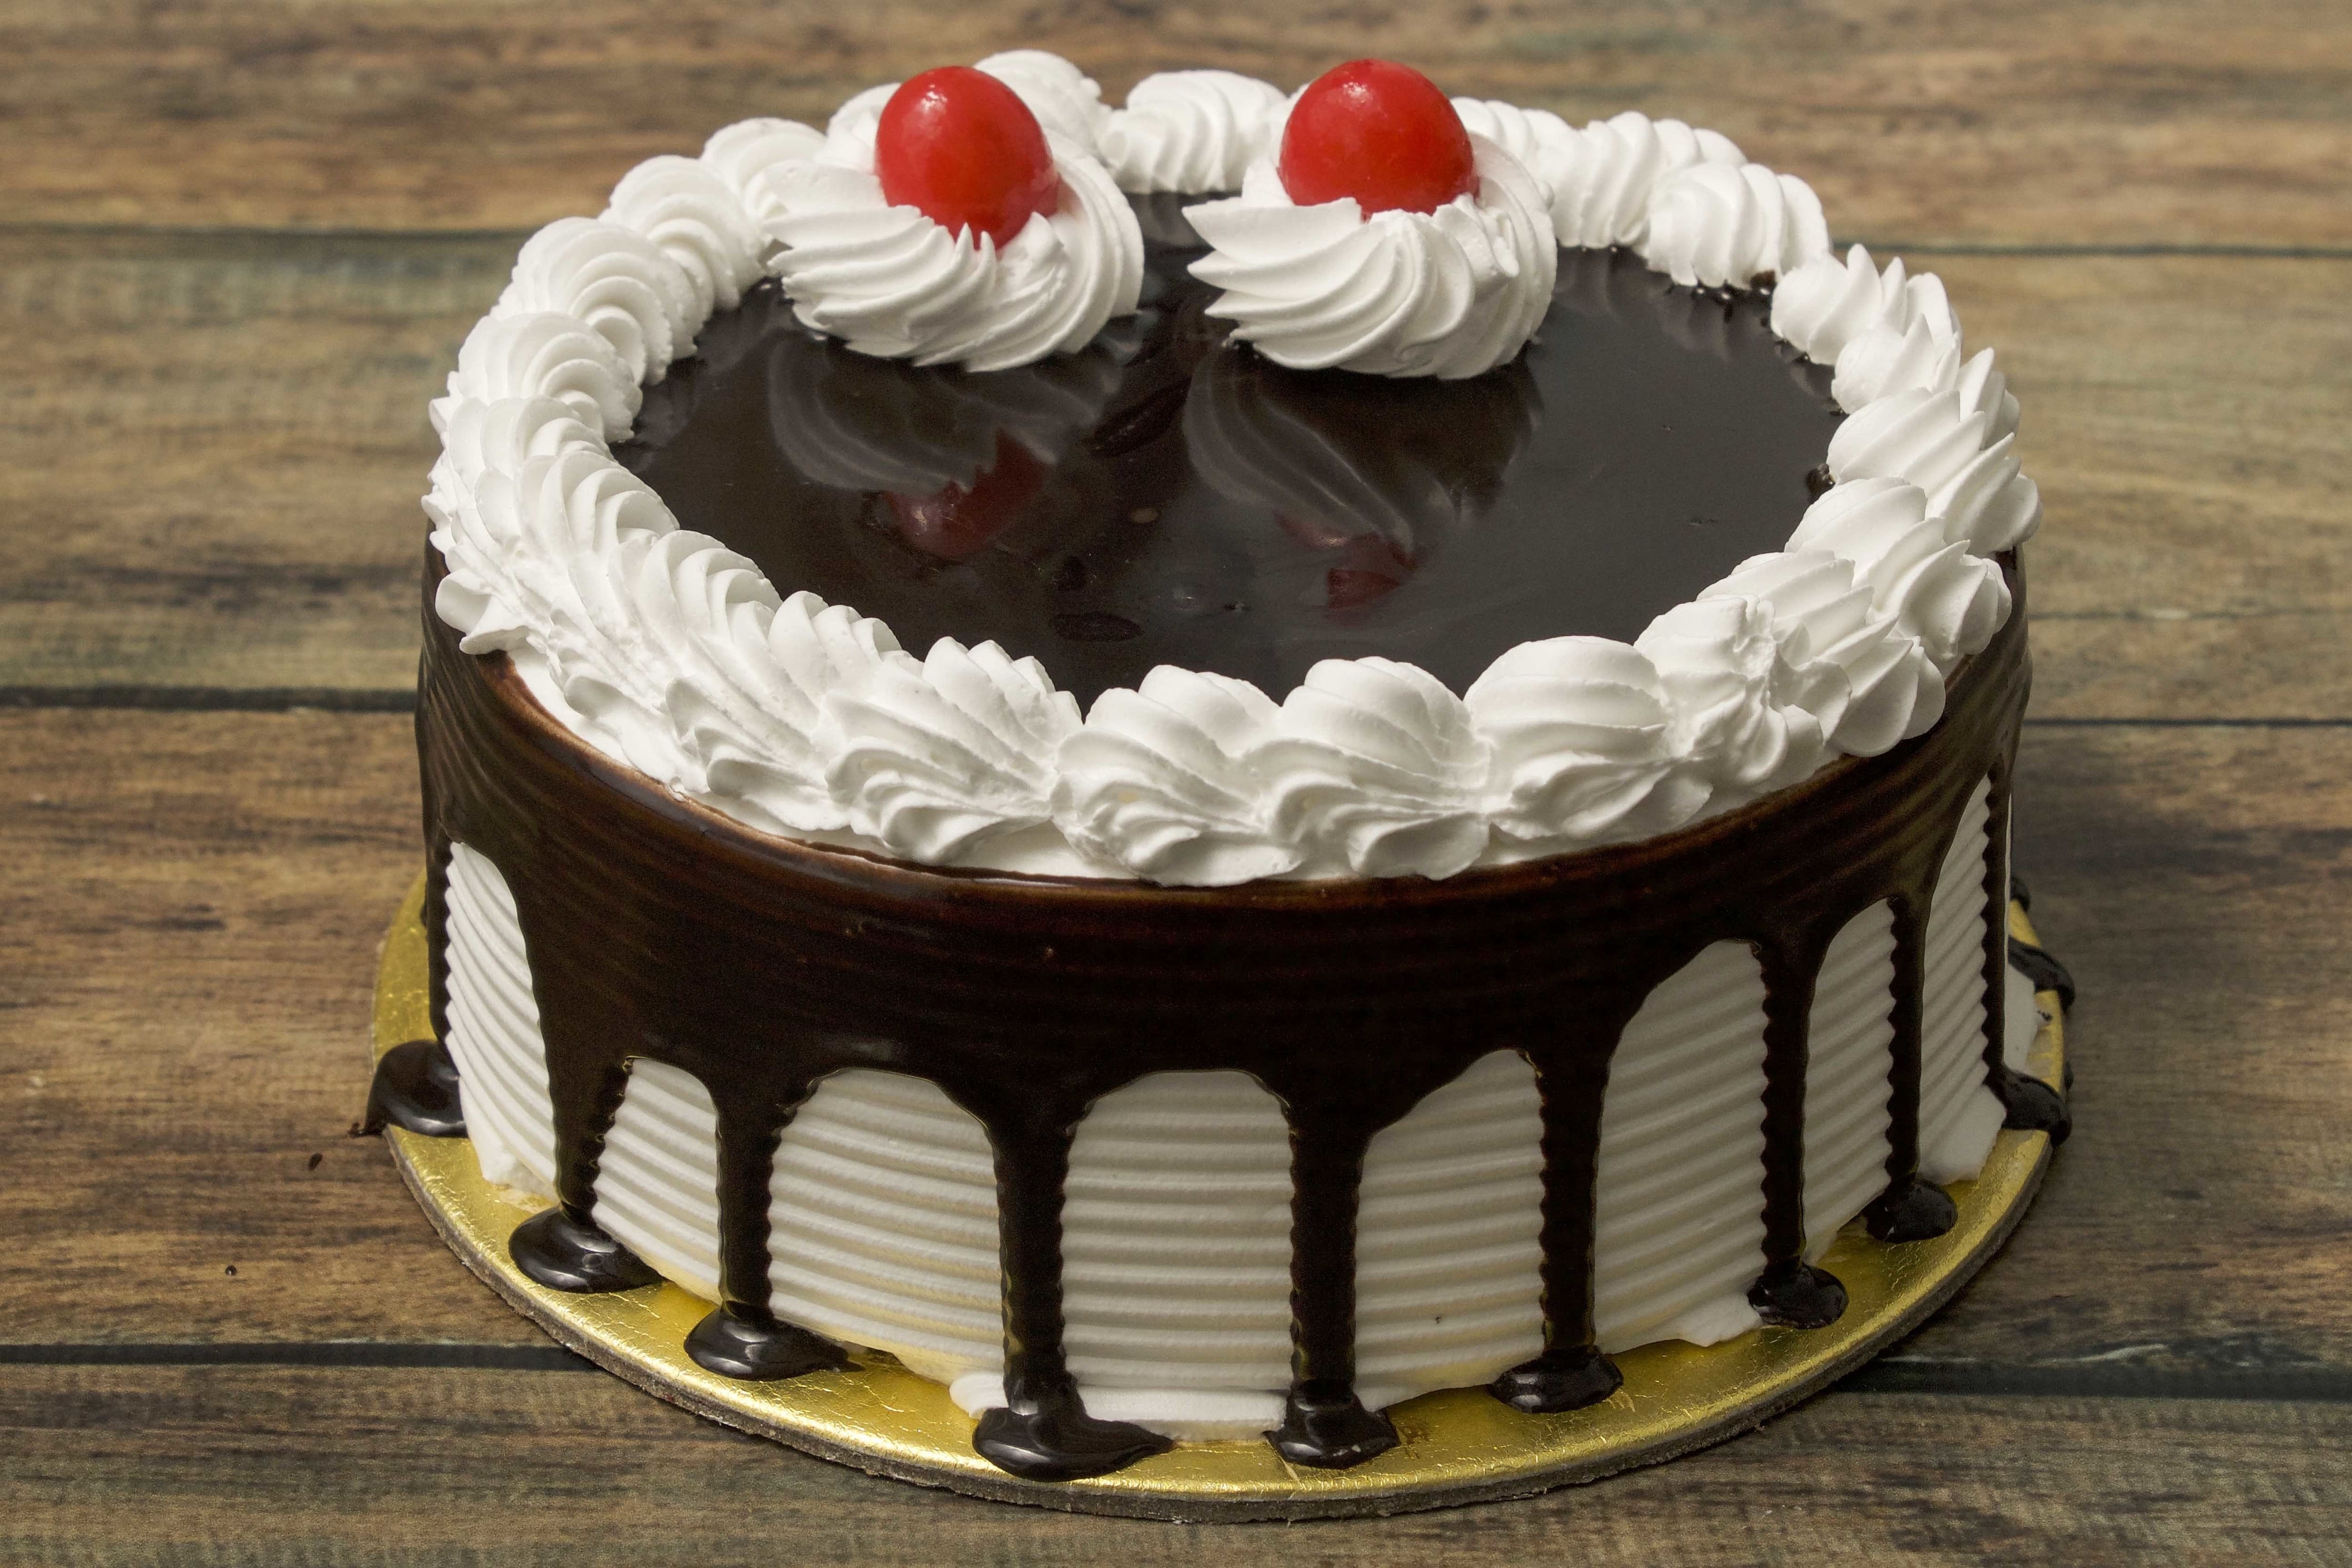 Top Bakeries in Noida Sector 62, Delhi - Best Cake Shops - Justdial